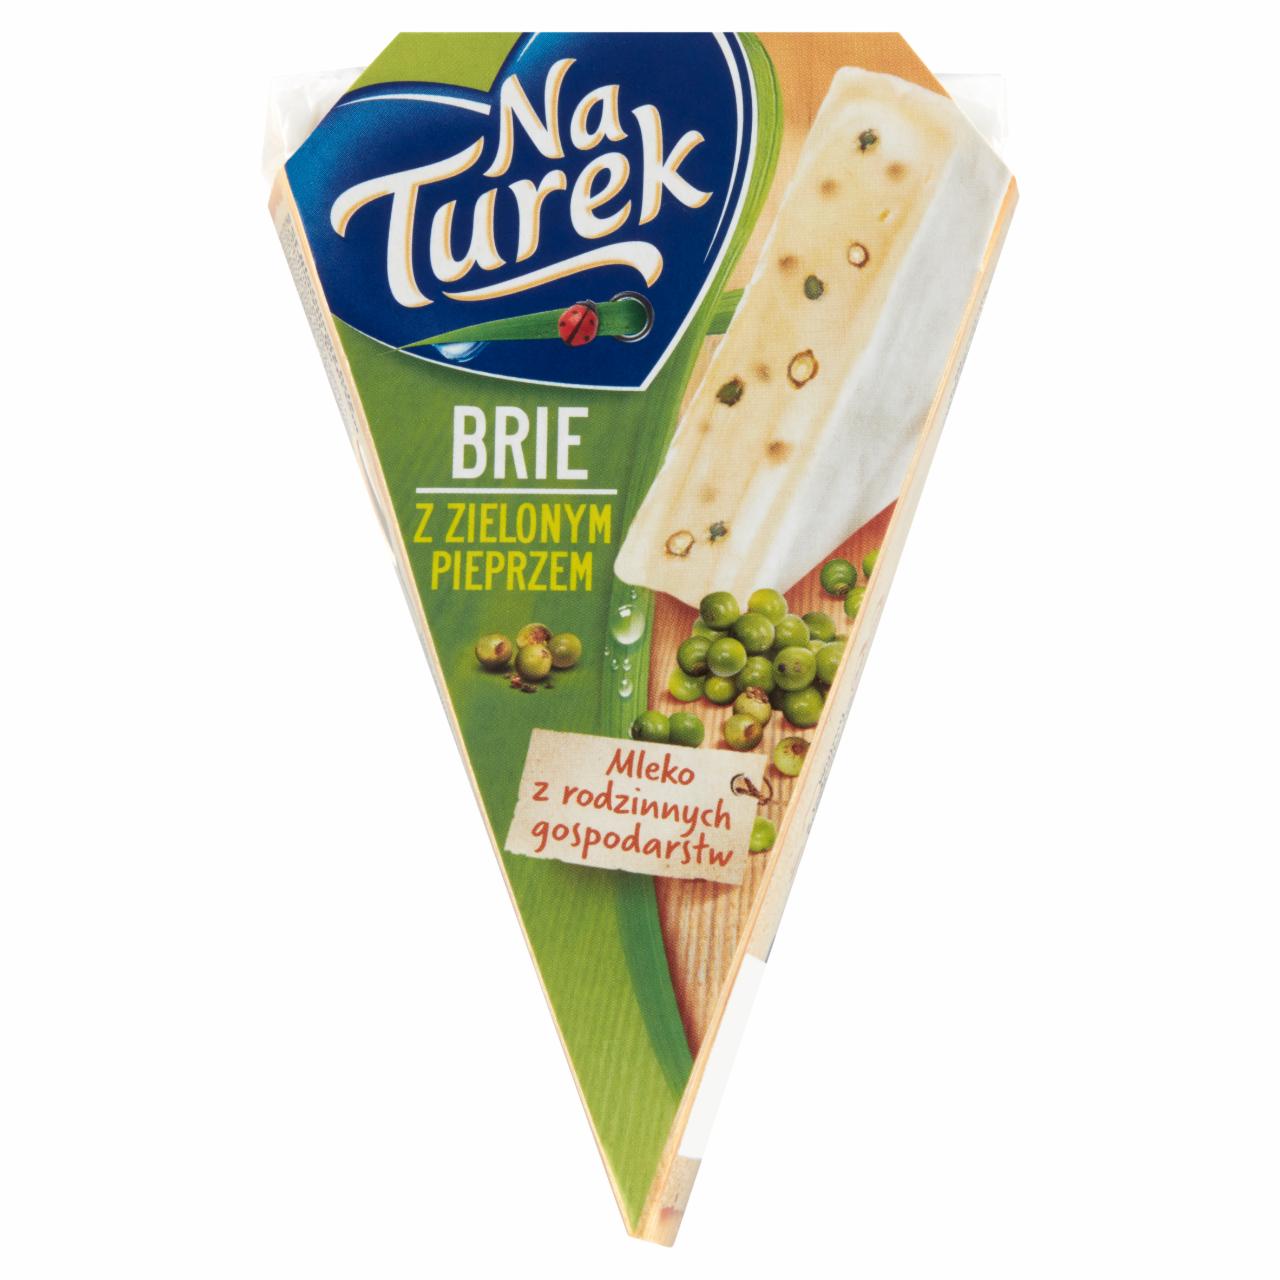 Zdjęcia - NaTurek Brie z zielonym pieprzem 125 g